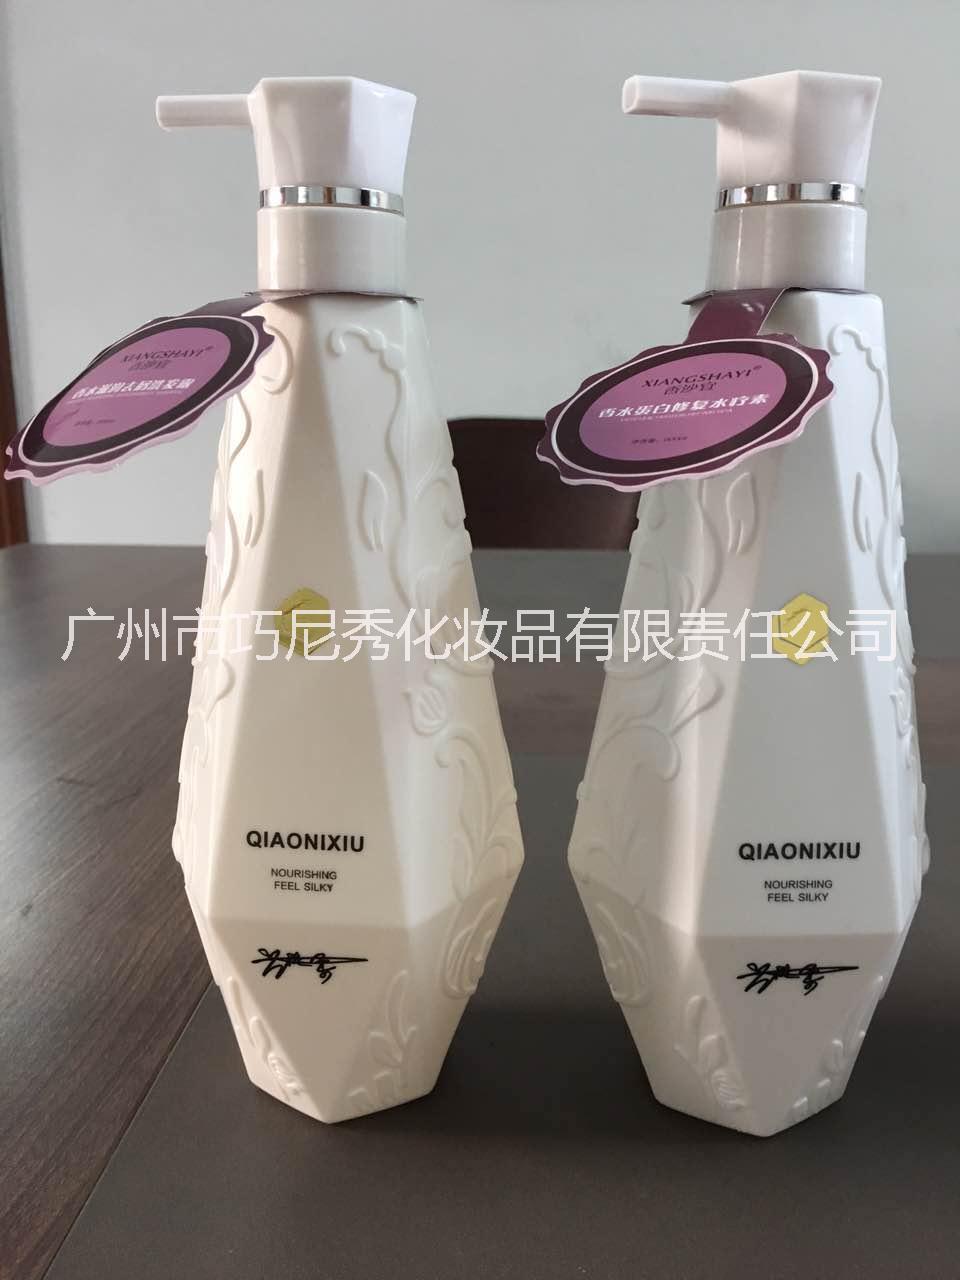 广州市区巧尼秀化妆品有限公司供应香沙宜香水蛋白修复水疗素500ml